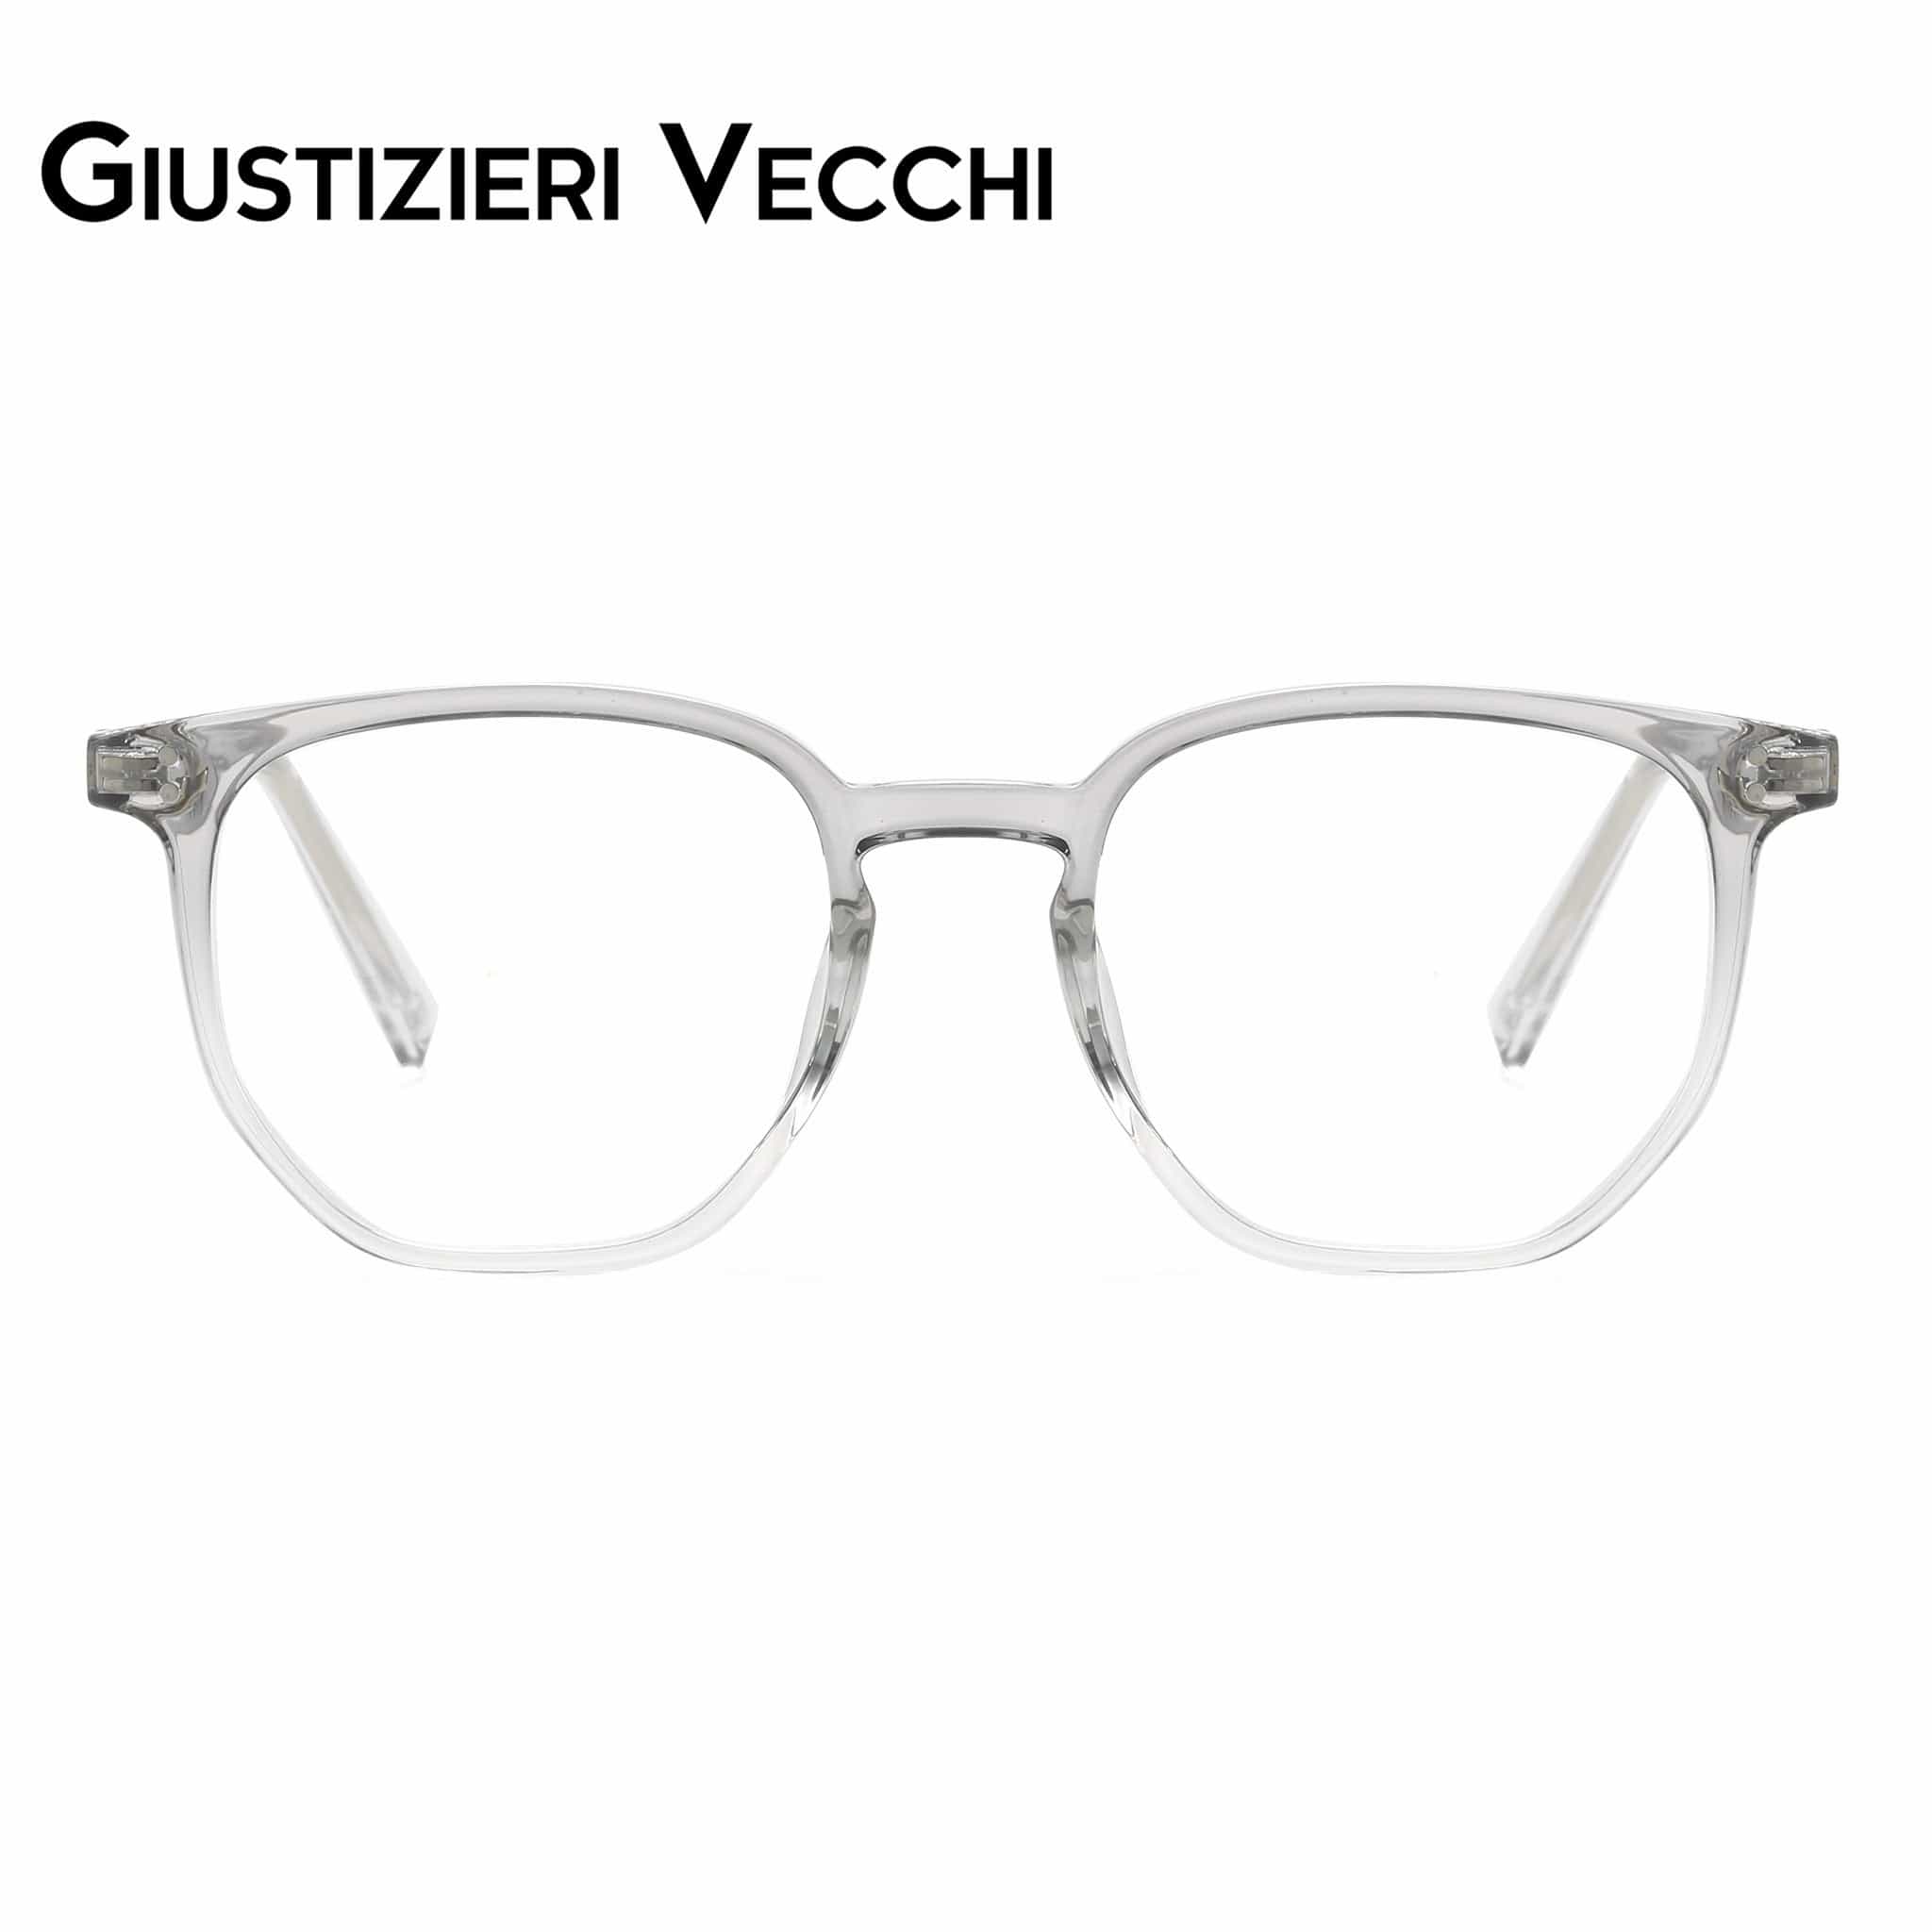 GIUSTIZIERI VECCHI Eyeglasses Small / Sea Glass Grey Venezia Vista Duo